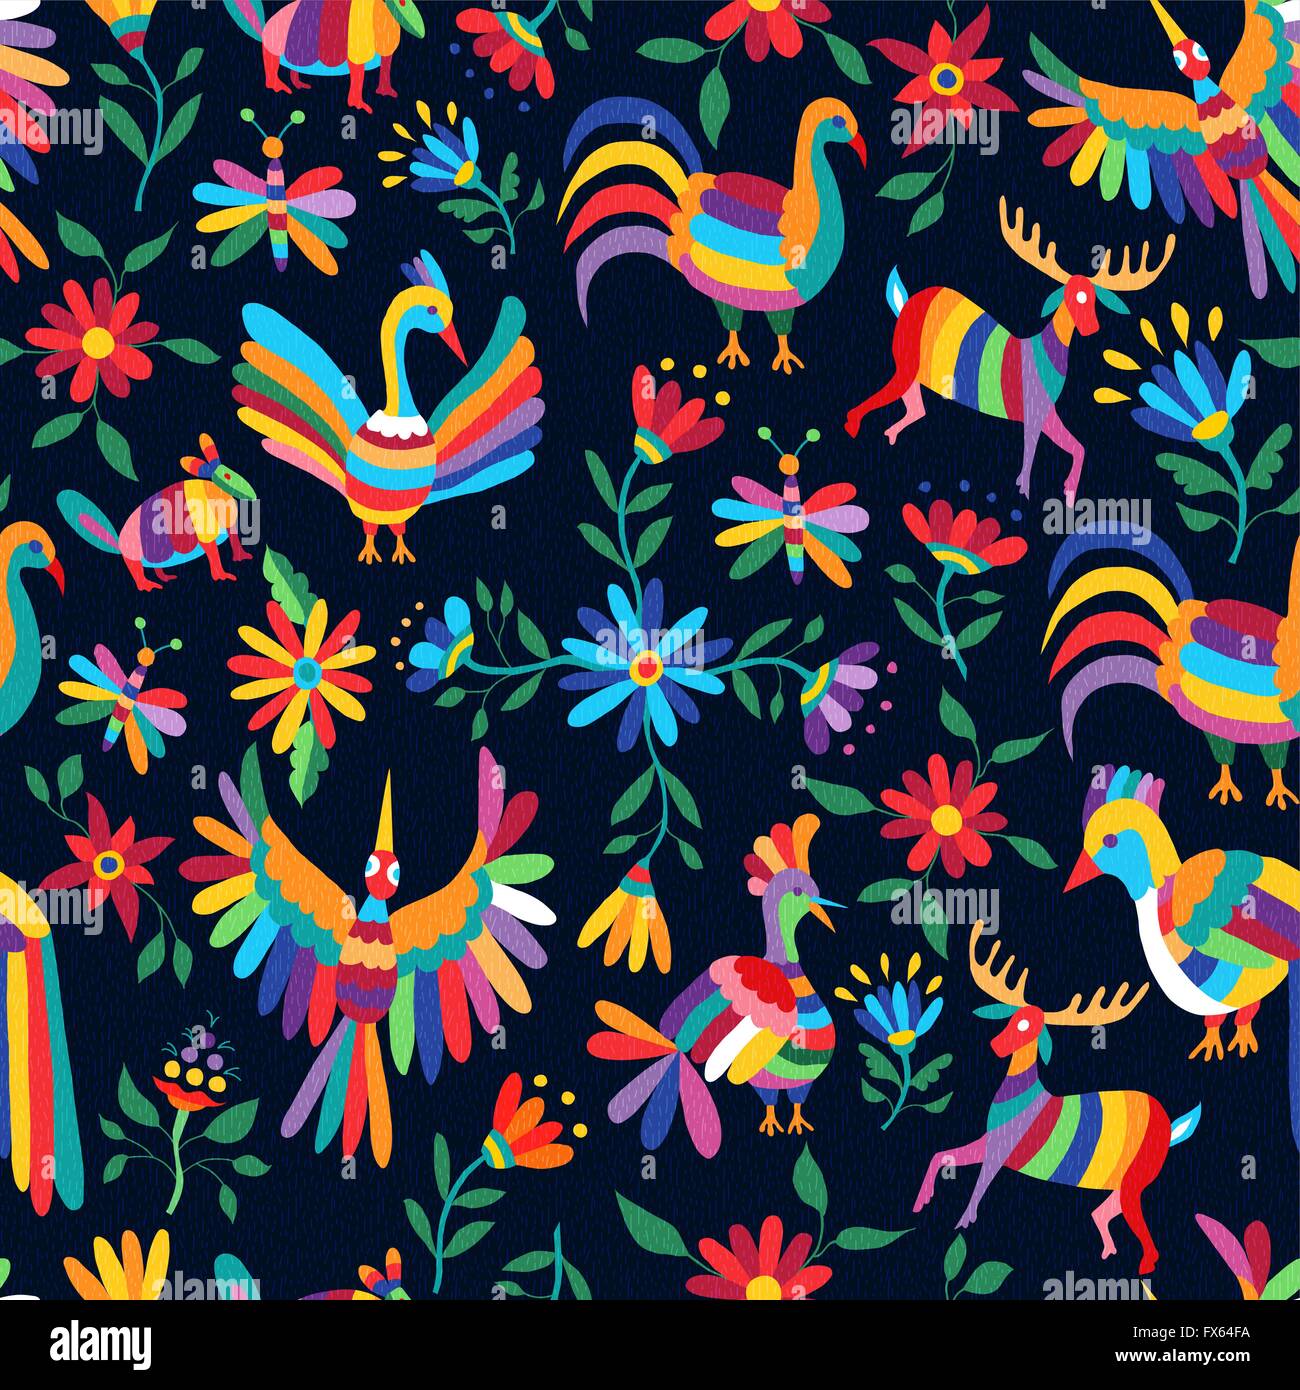 Leuchtende Farbe Musterdesign mit schönen Frühling Zeit Illustrationen der mexikanischen Kunst Tiere und Blumen Natur Stilelemente. Stock Vektor